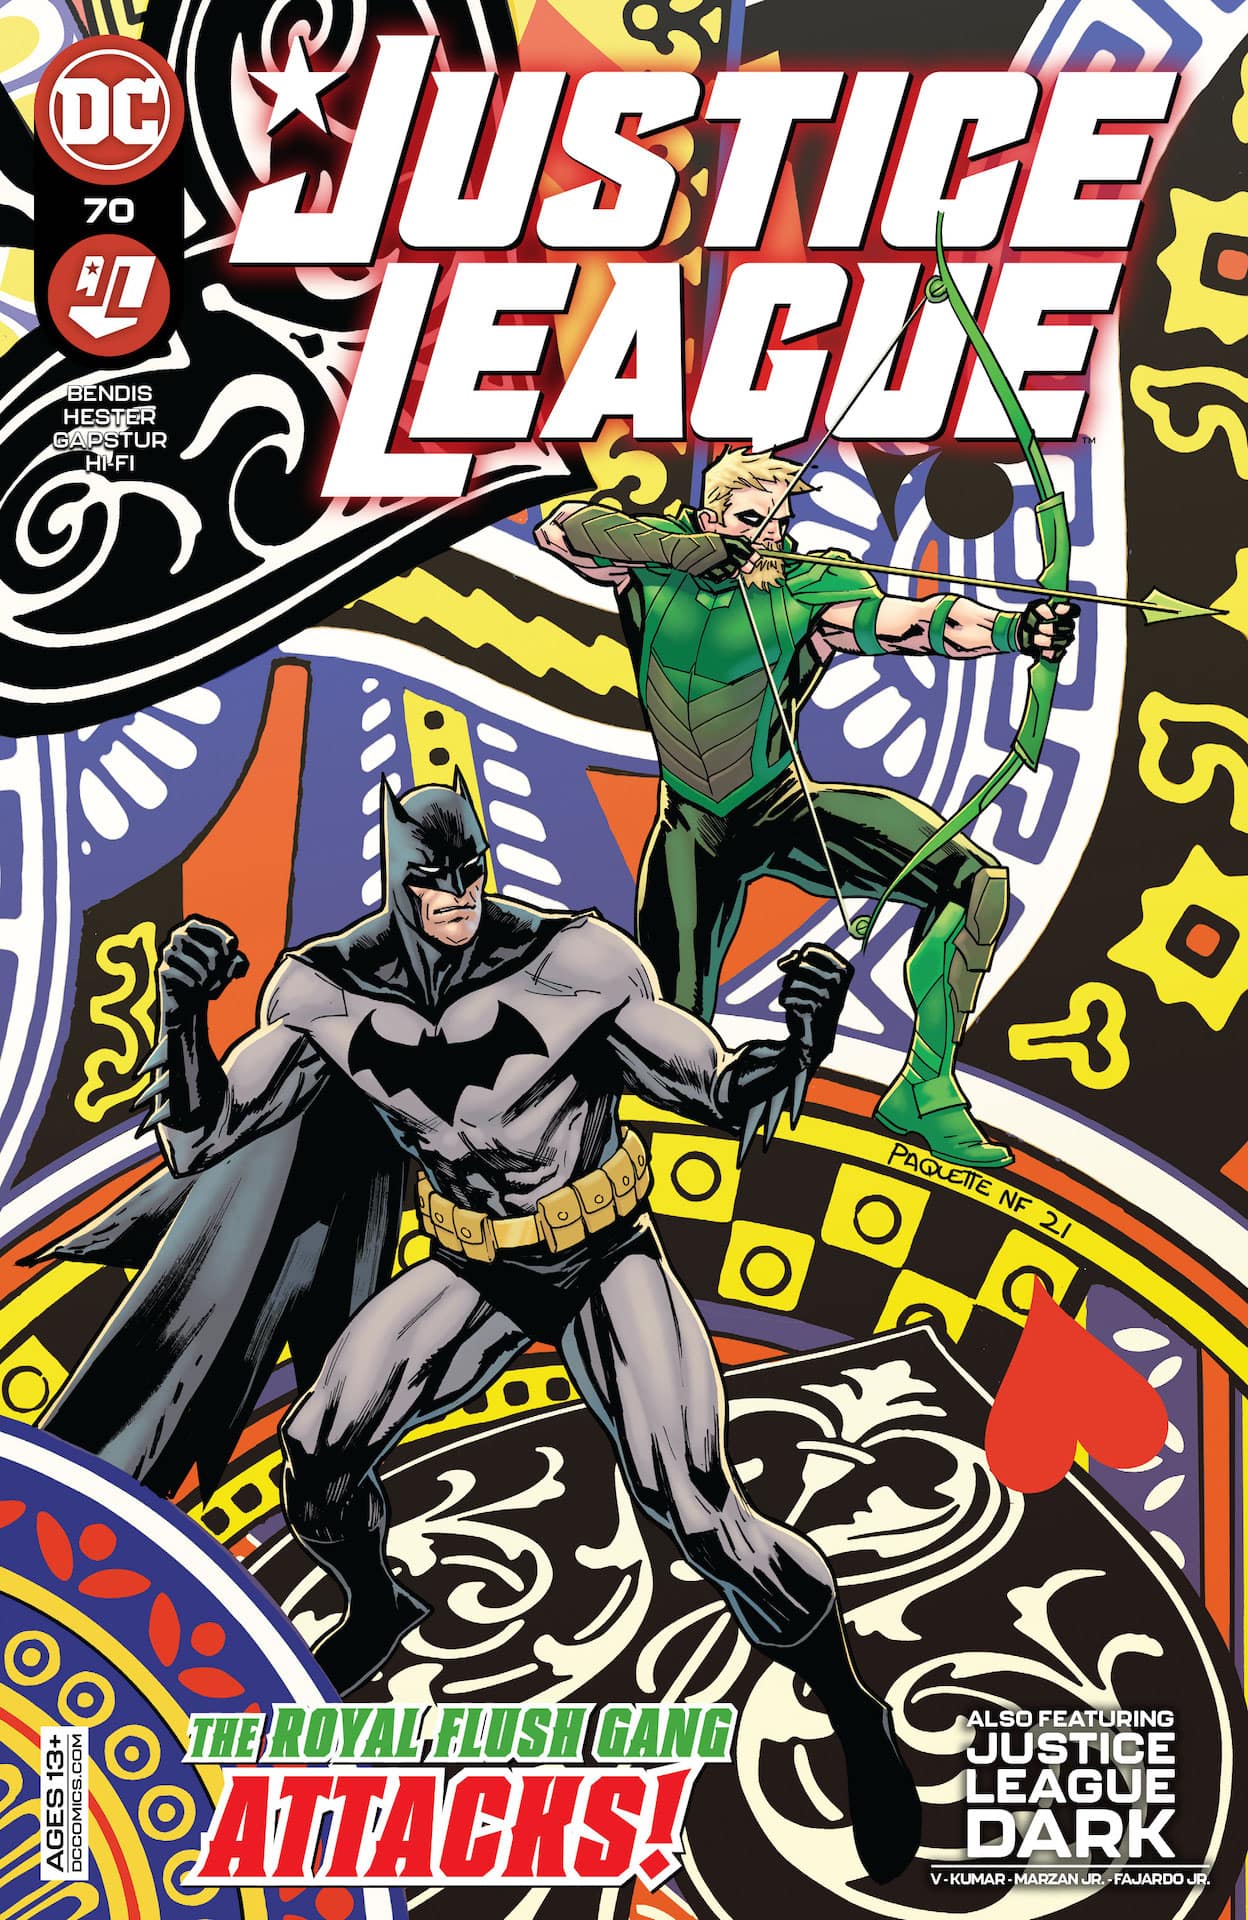 DC Preview: Justice League #70